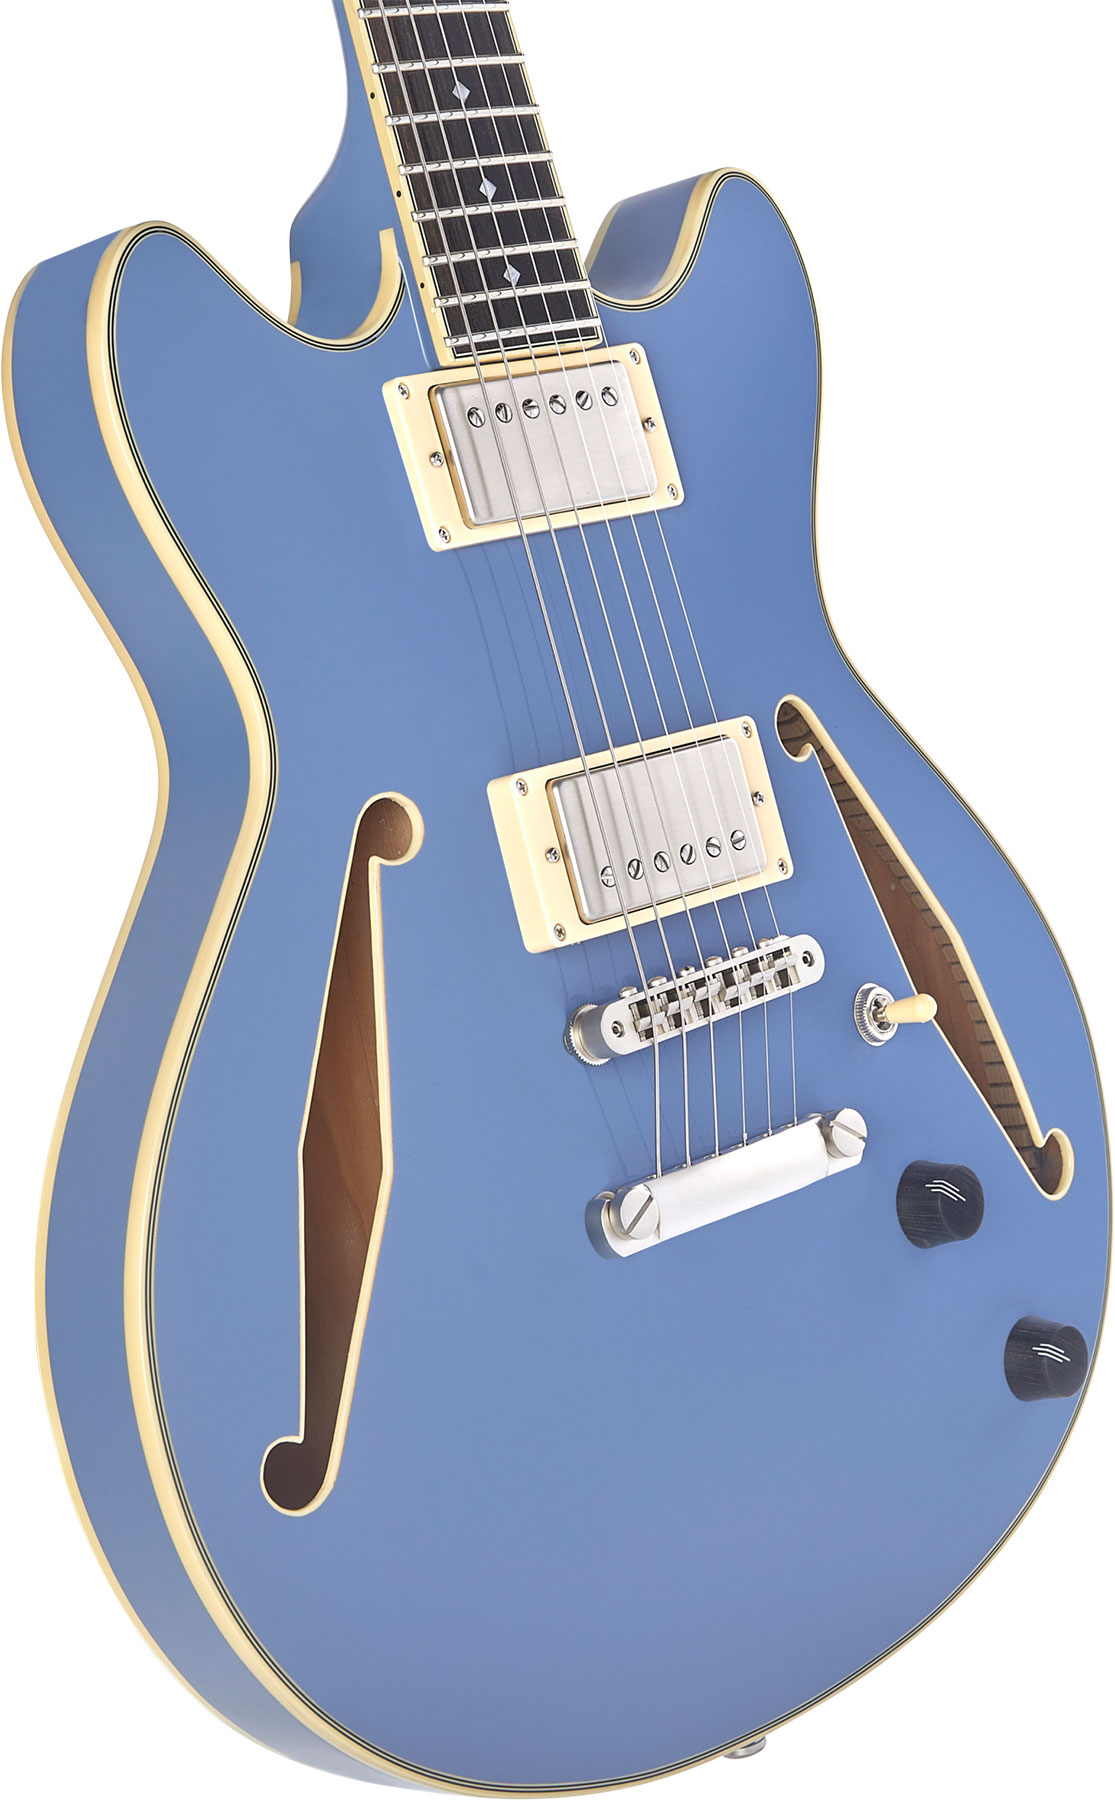 D'angelico Mini Dc Tour Excel 2h Ht Eb - Slate Blue - Semi hollow elektriche gitaar - Variation 3